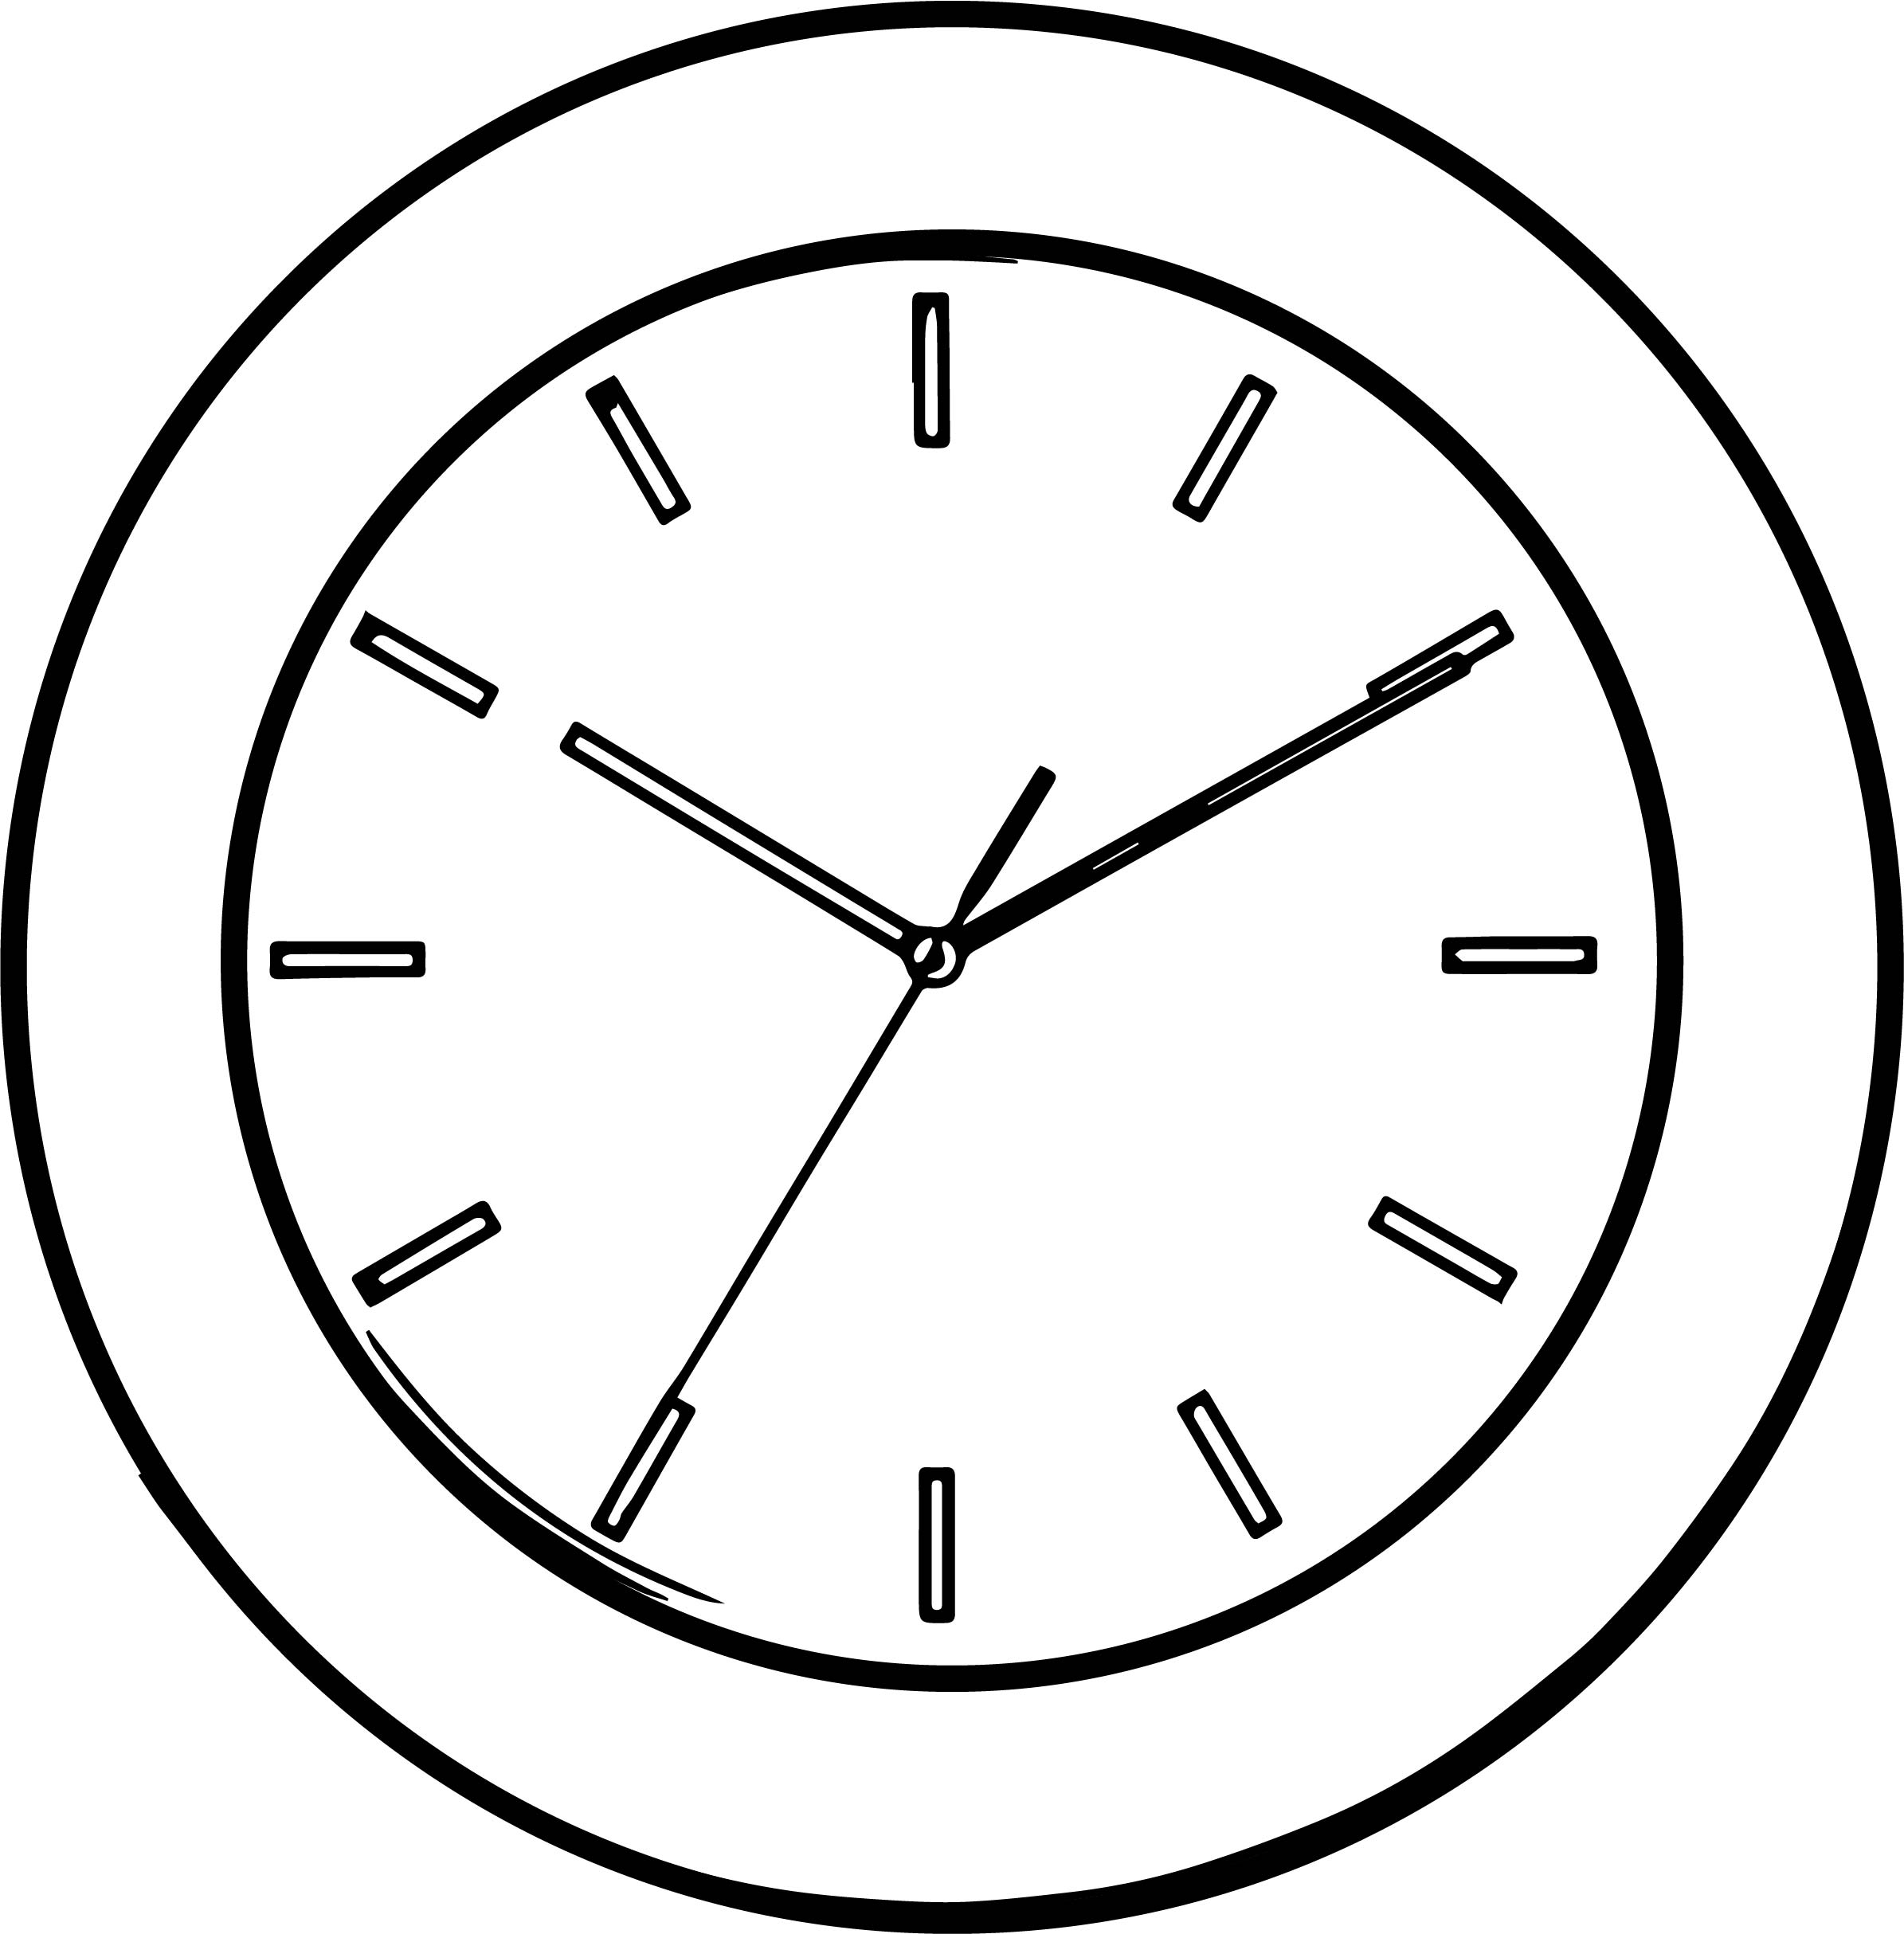 Часы на времени нарисовать. Часы раскраска. Часы для раскрашивания. Раскраска часов. Часы черно-белая для детей.